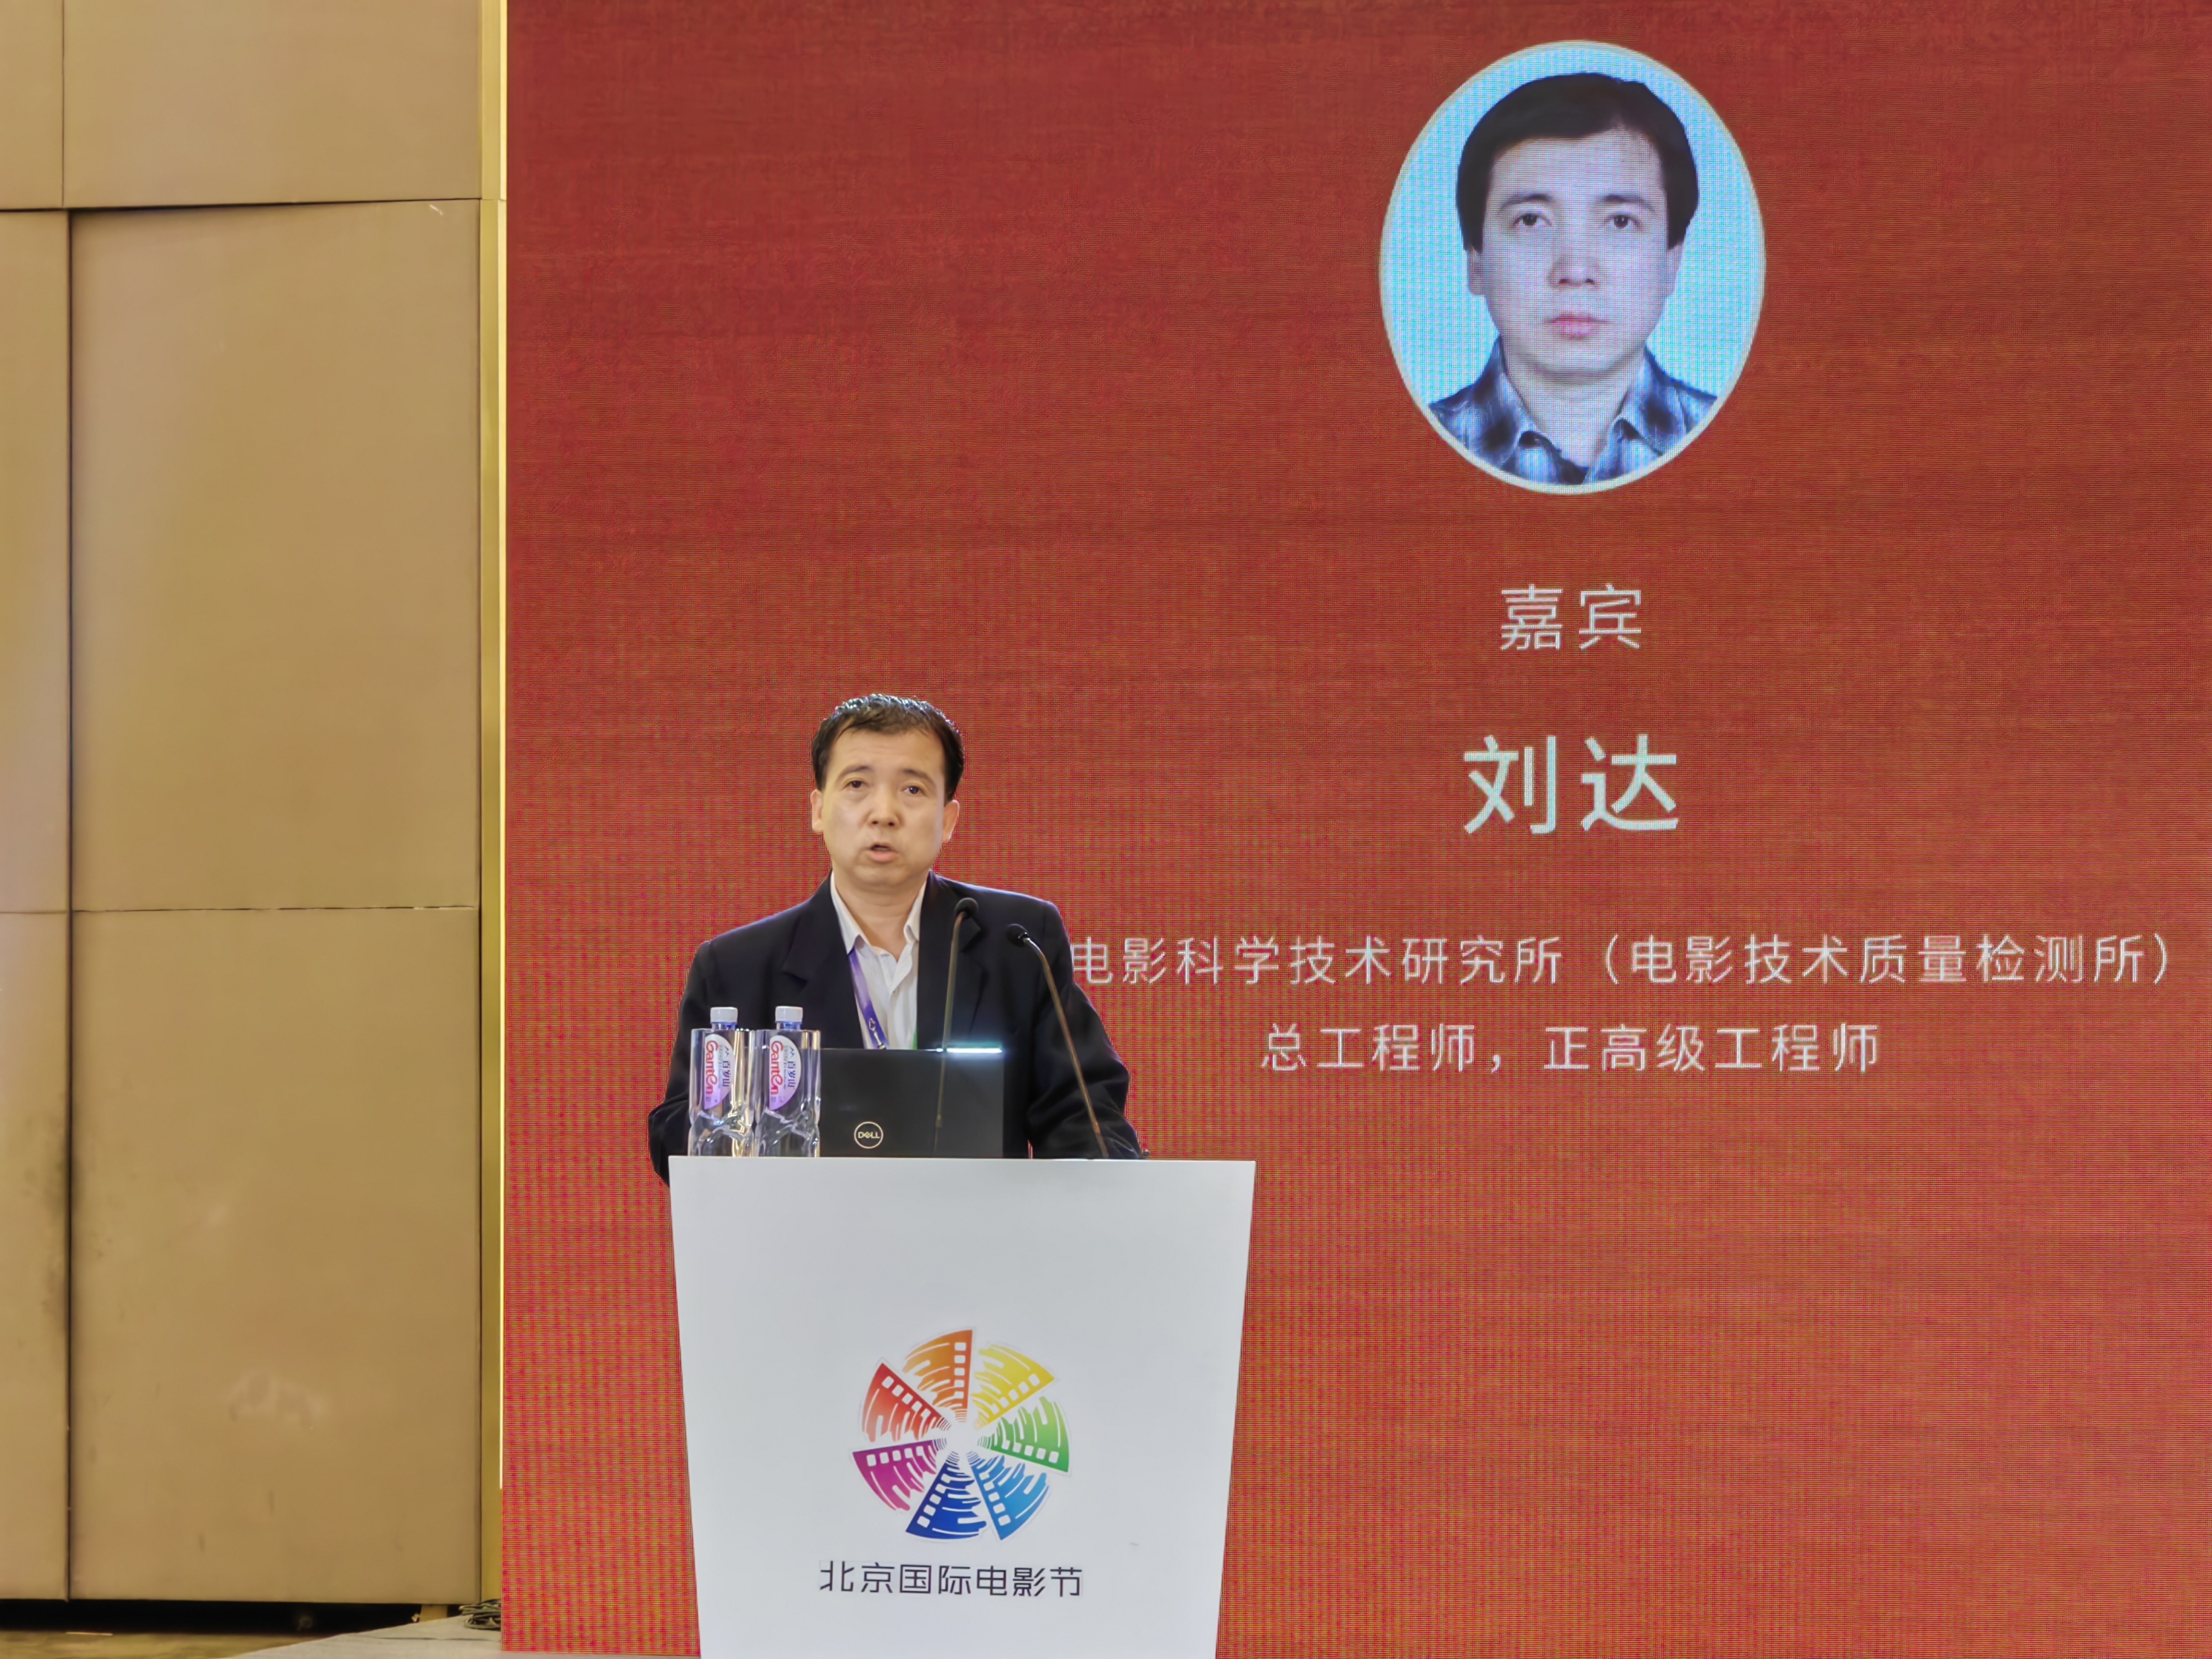 電影科技創新的探索與實踐 中國電影高質量發展論壇在京舉辦